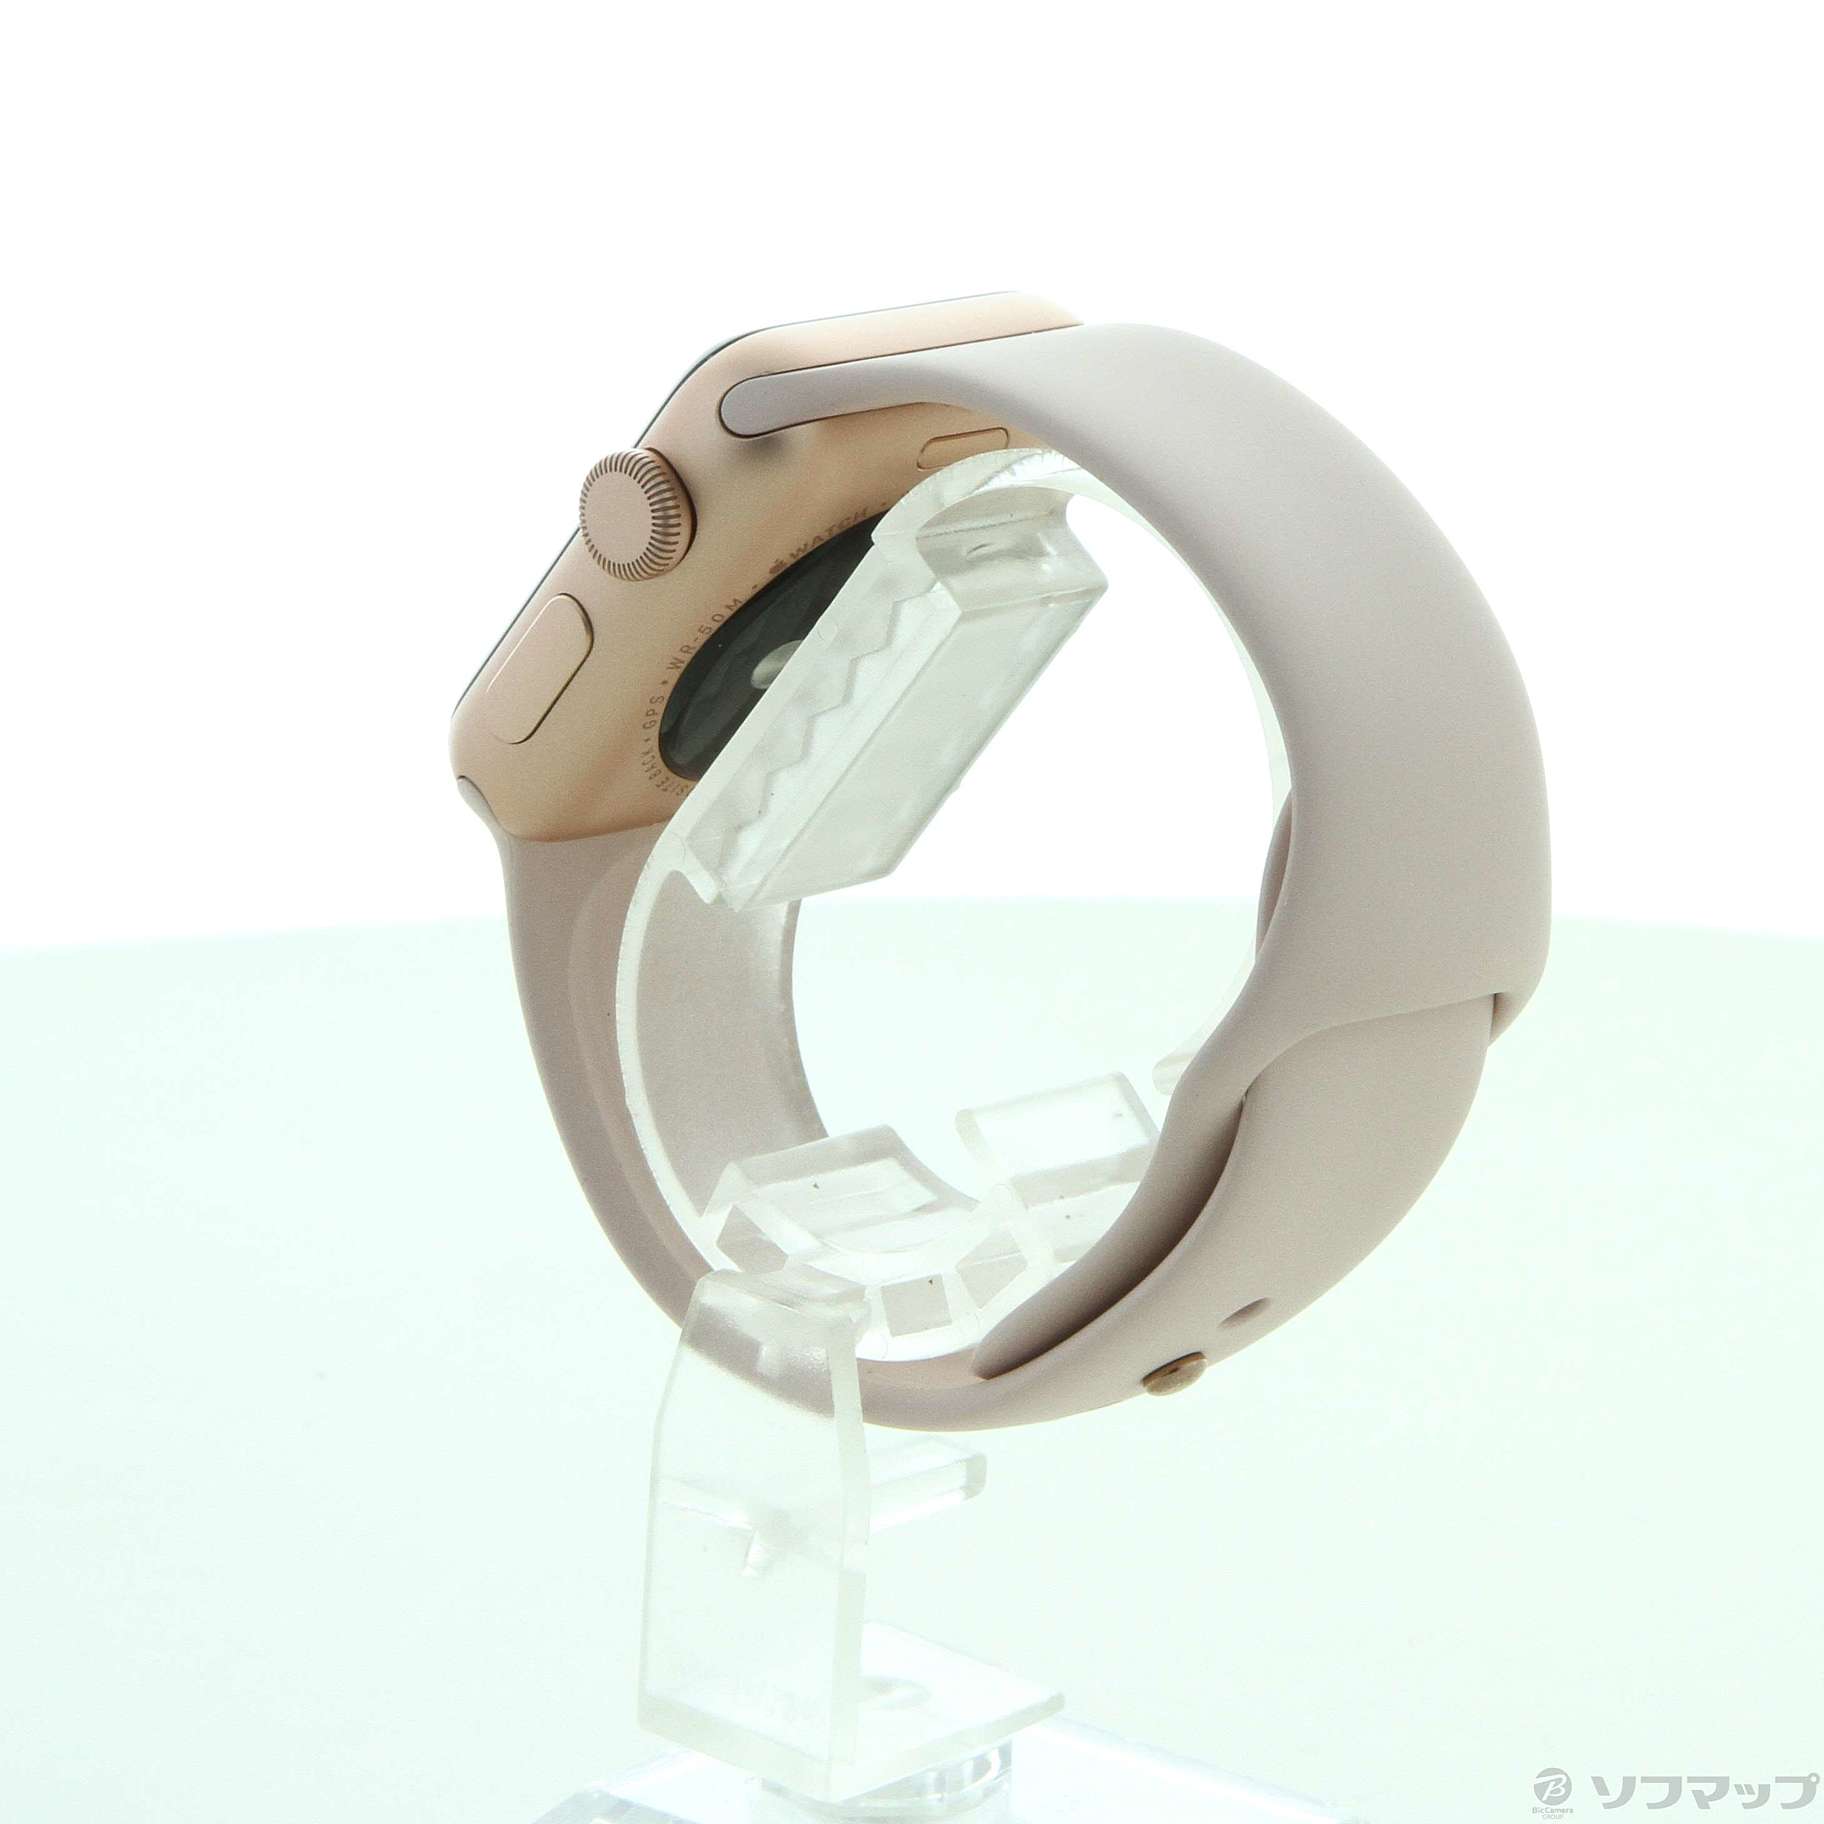 中古】Apple Watch Series 3 GPS 38mm ゴールドアルミニウムケース 